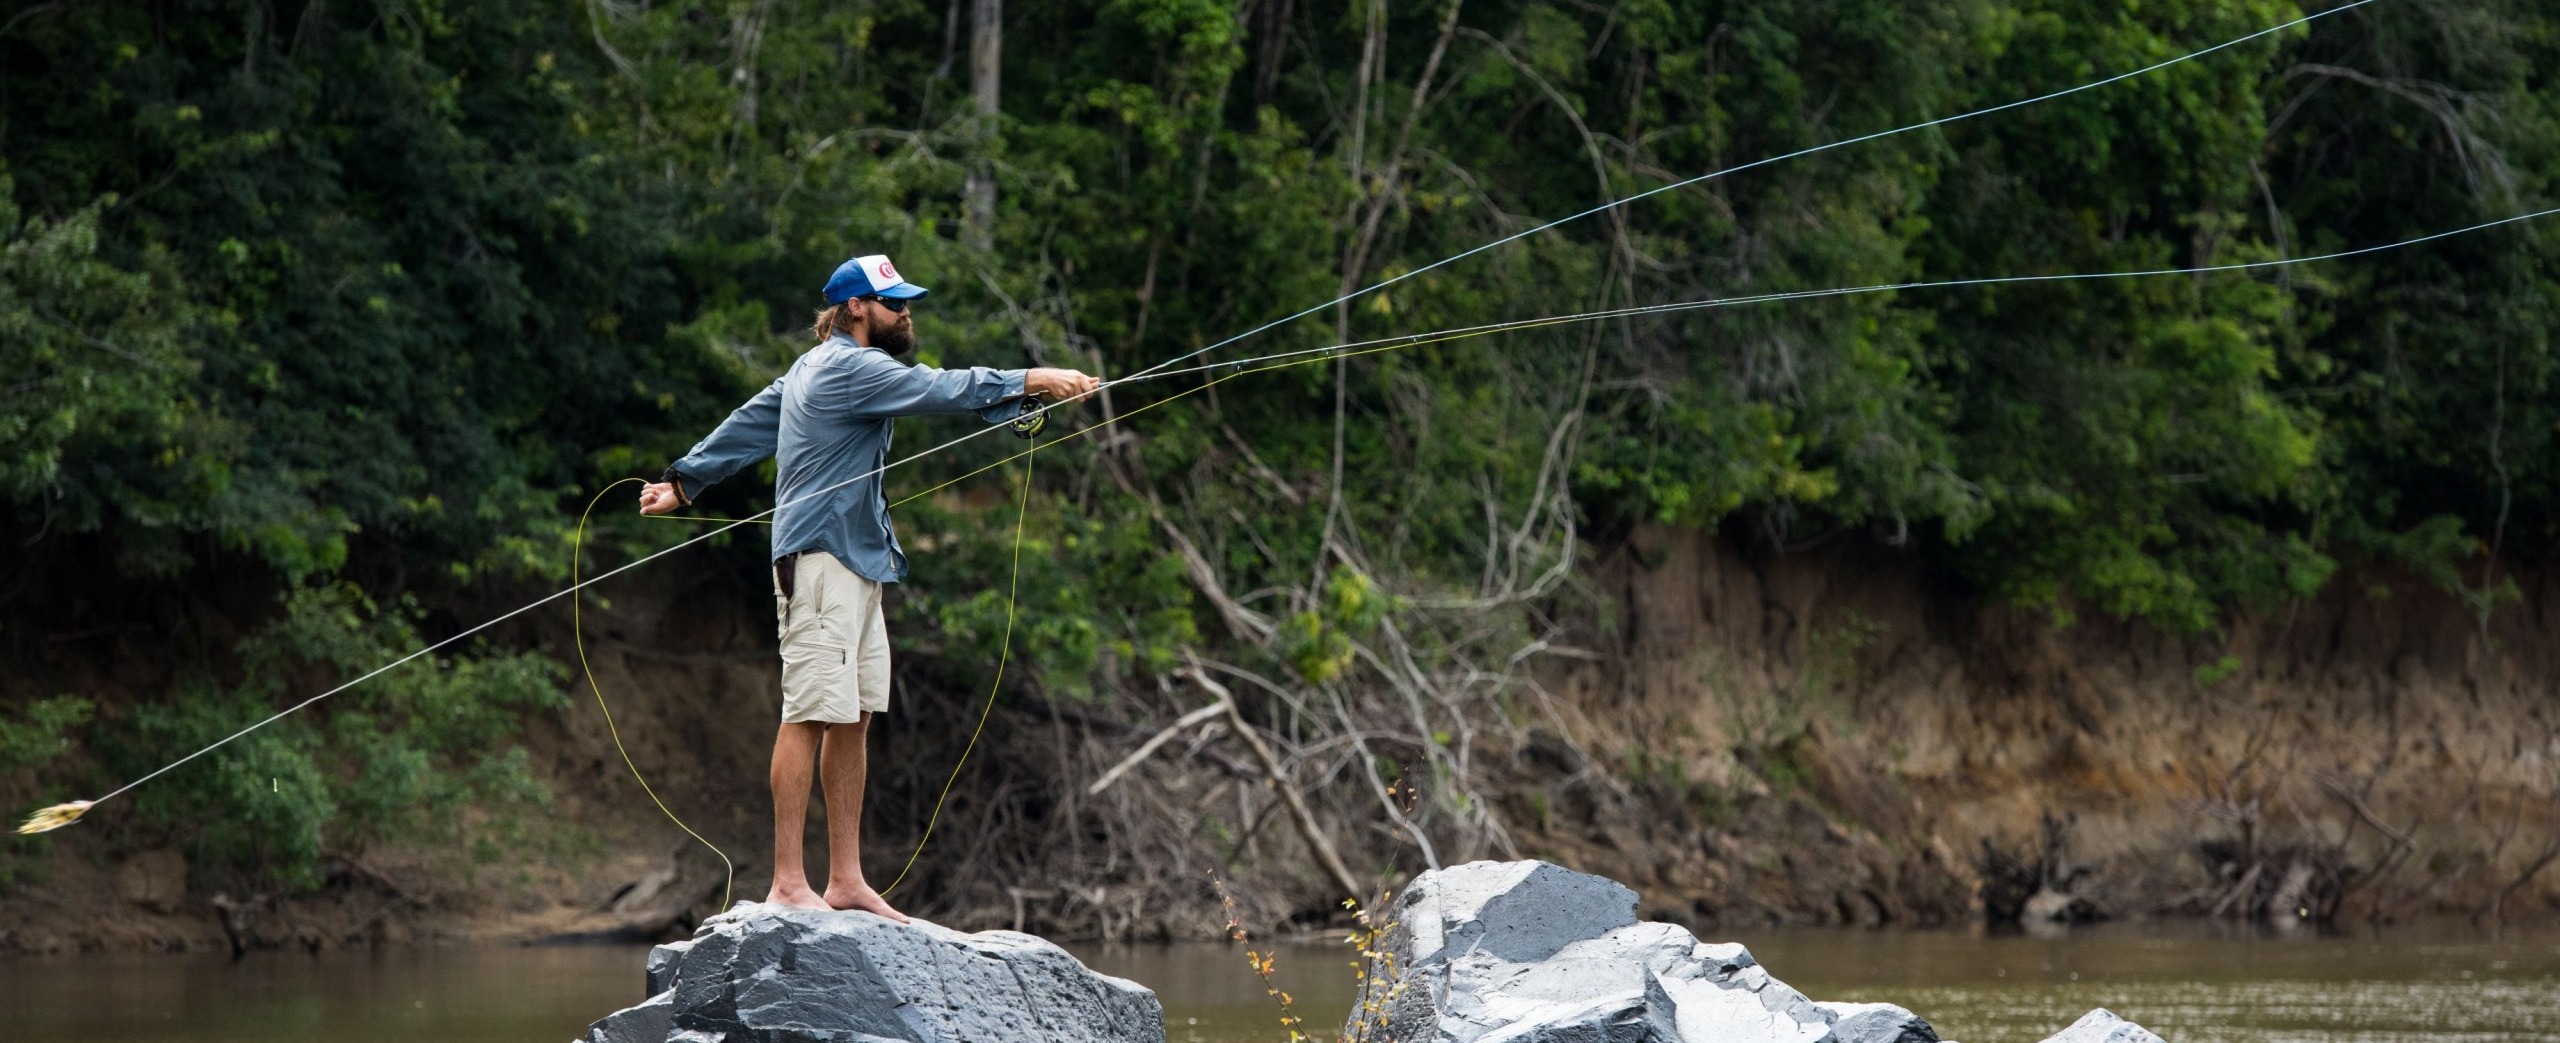 Bear Creek Fishing Gear & Apparel at